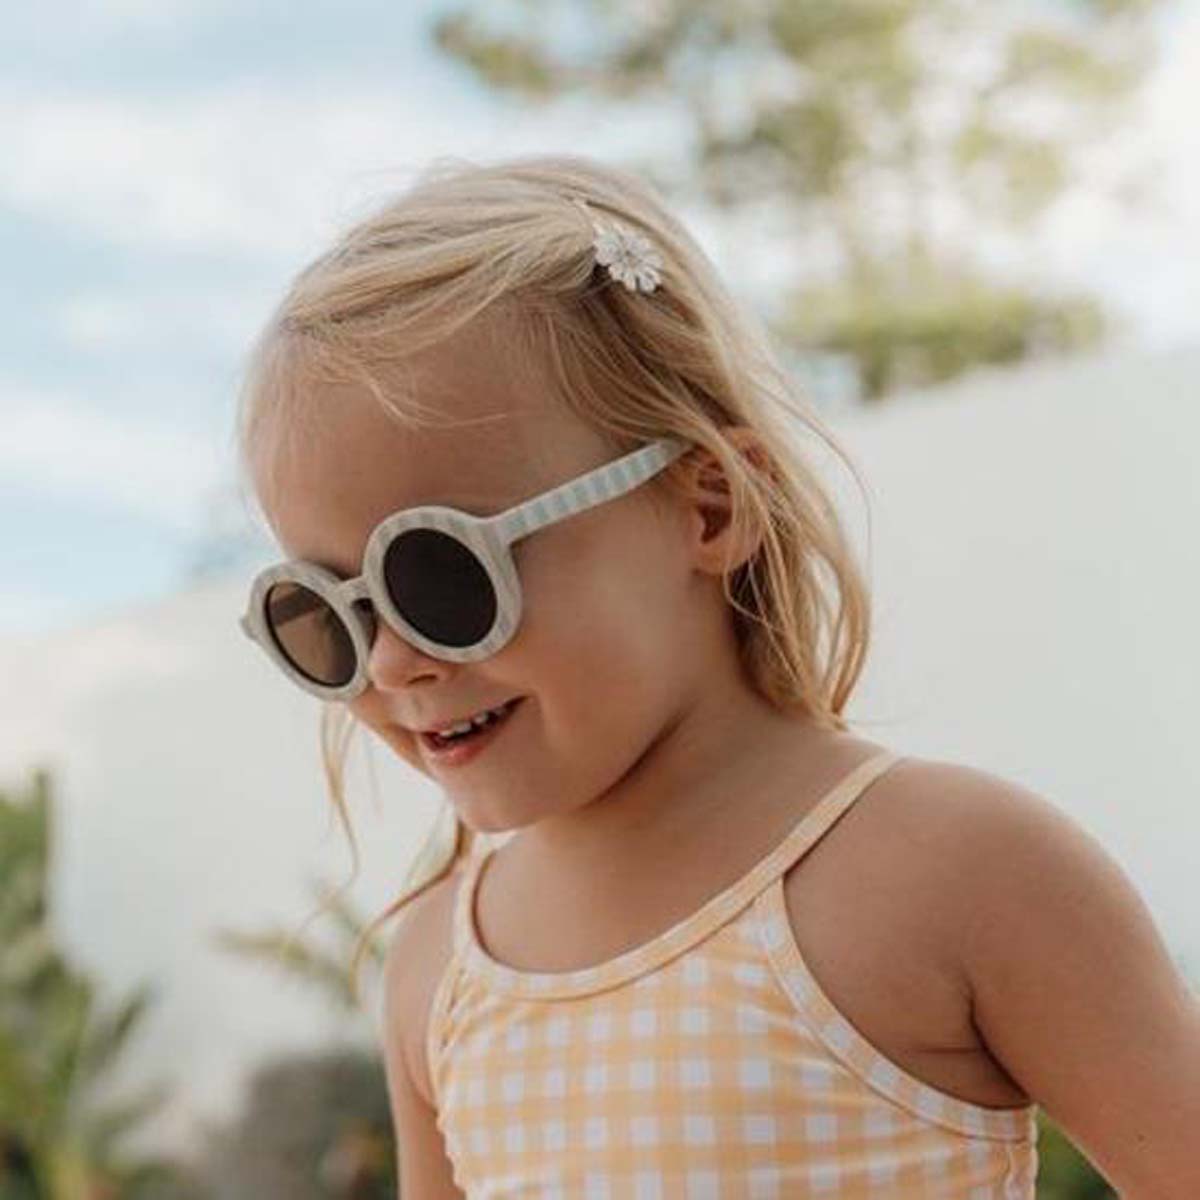 Bescherm de ogen van je baby of kind goed met een goede zonnebril met een goede UV-bescherming. VanZus biedt zonnebrillen van diverse merken voor baby, dreumes, peuter, kleuter en ouder kind. Een goede oogbescherming vind je hier! 